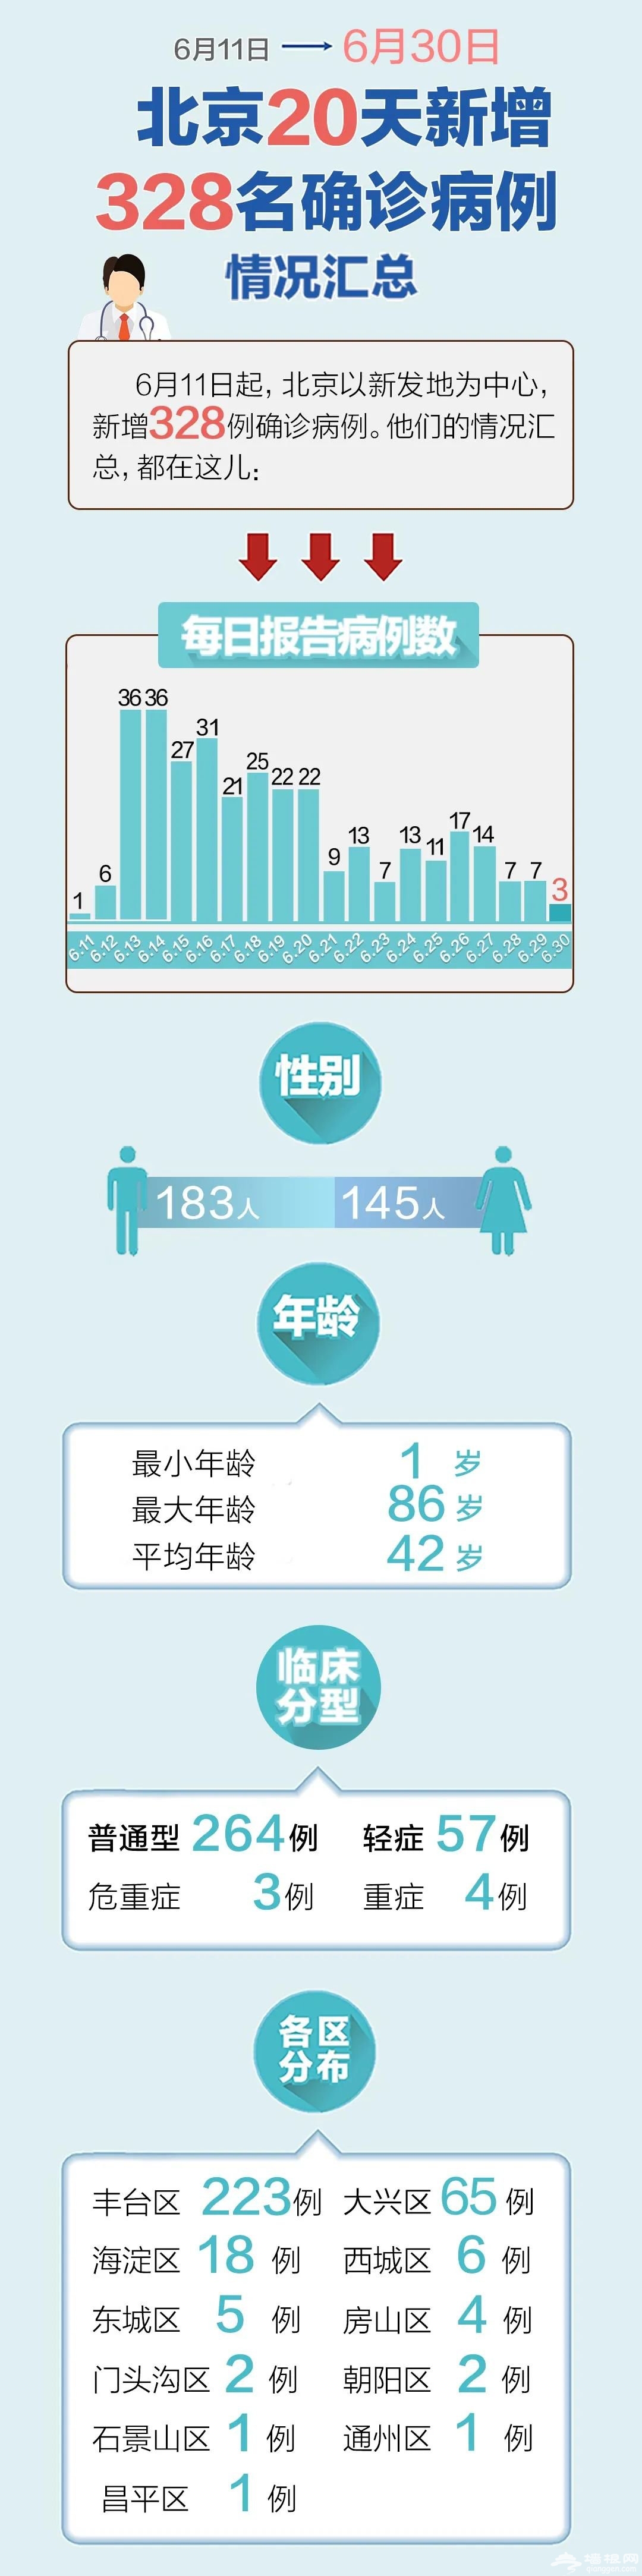 北京20天新增328例情况汇总()